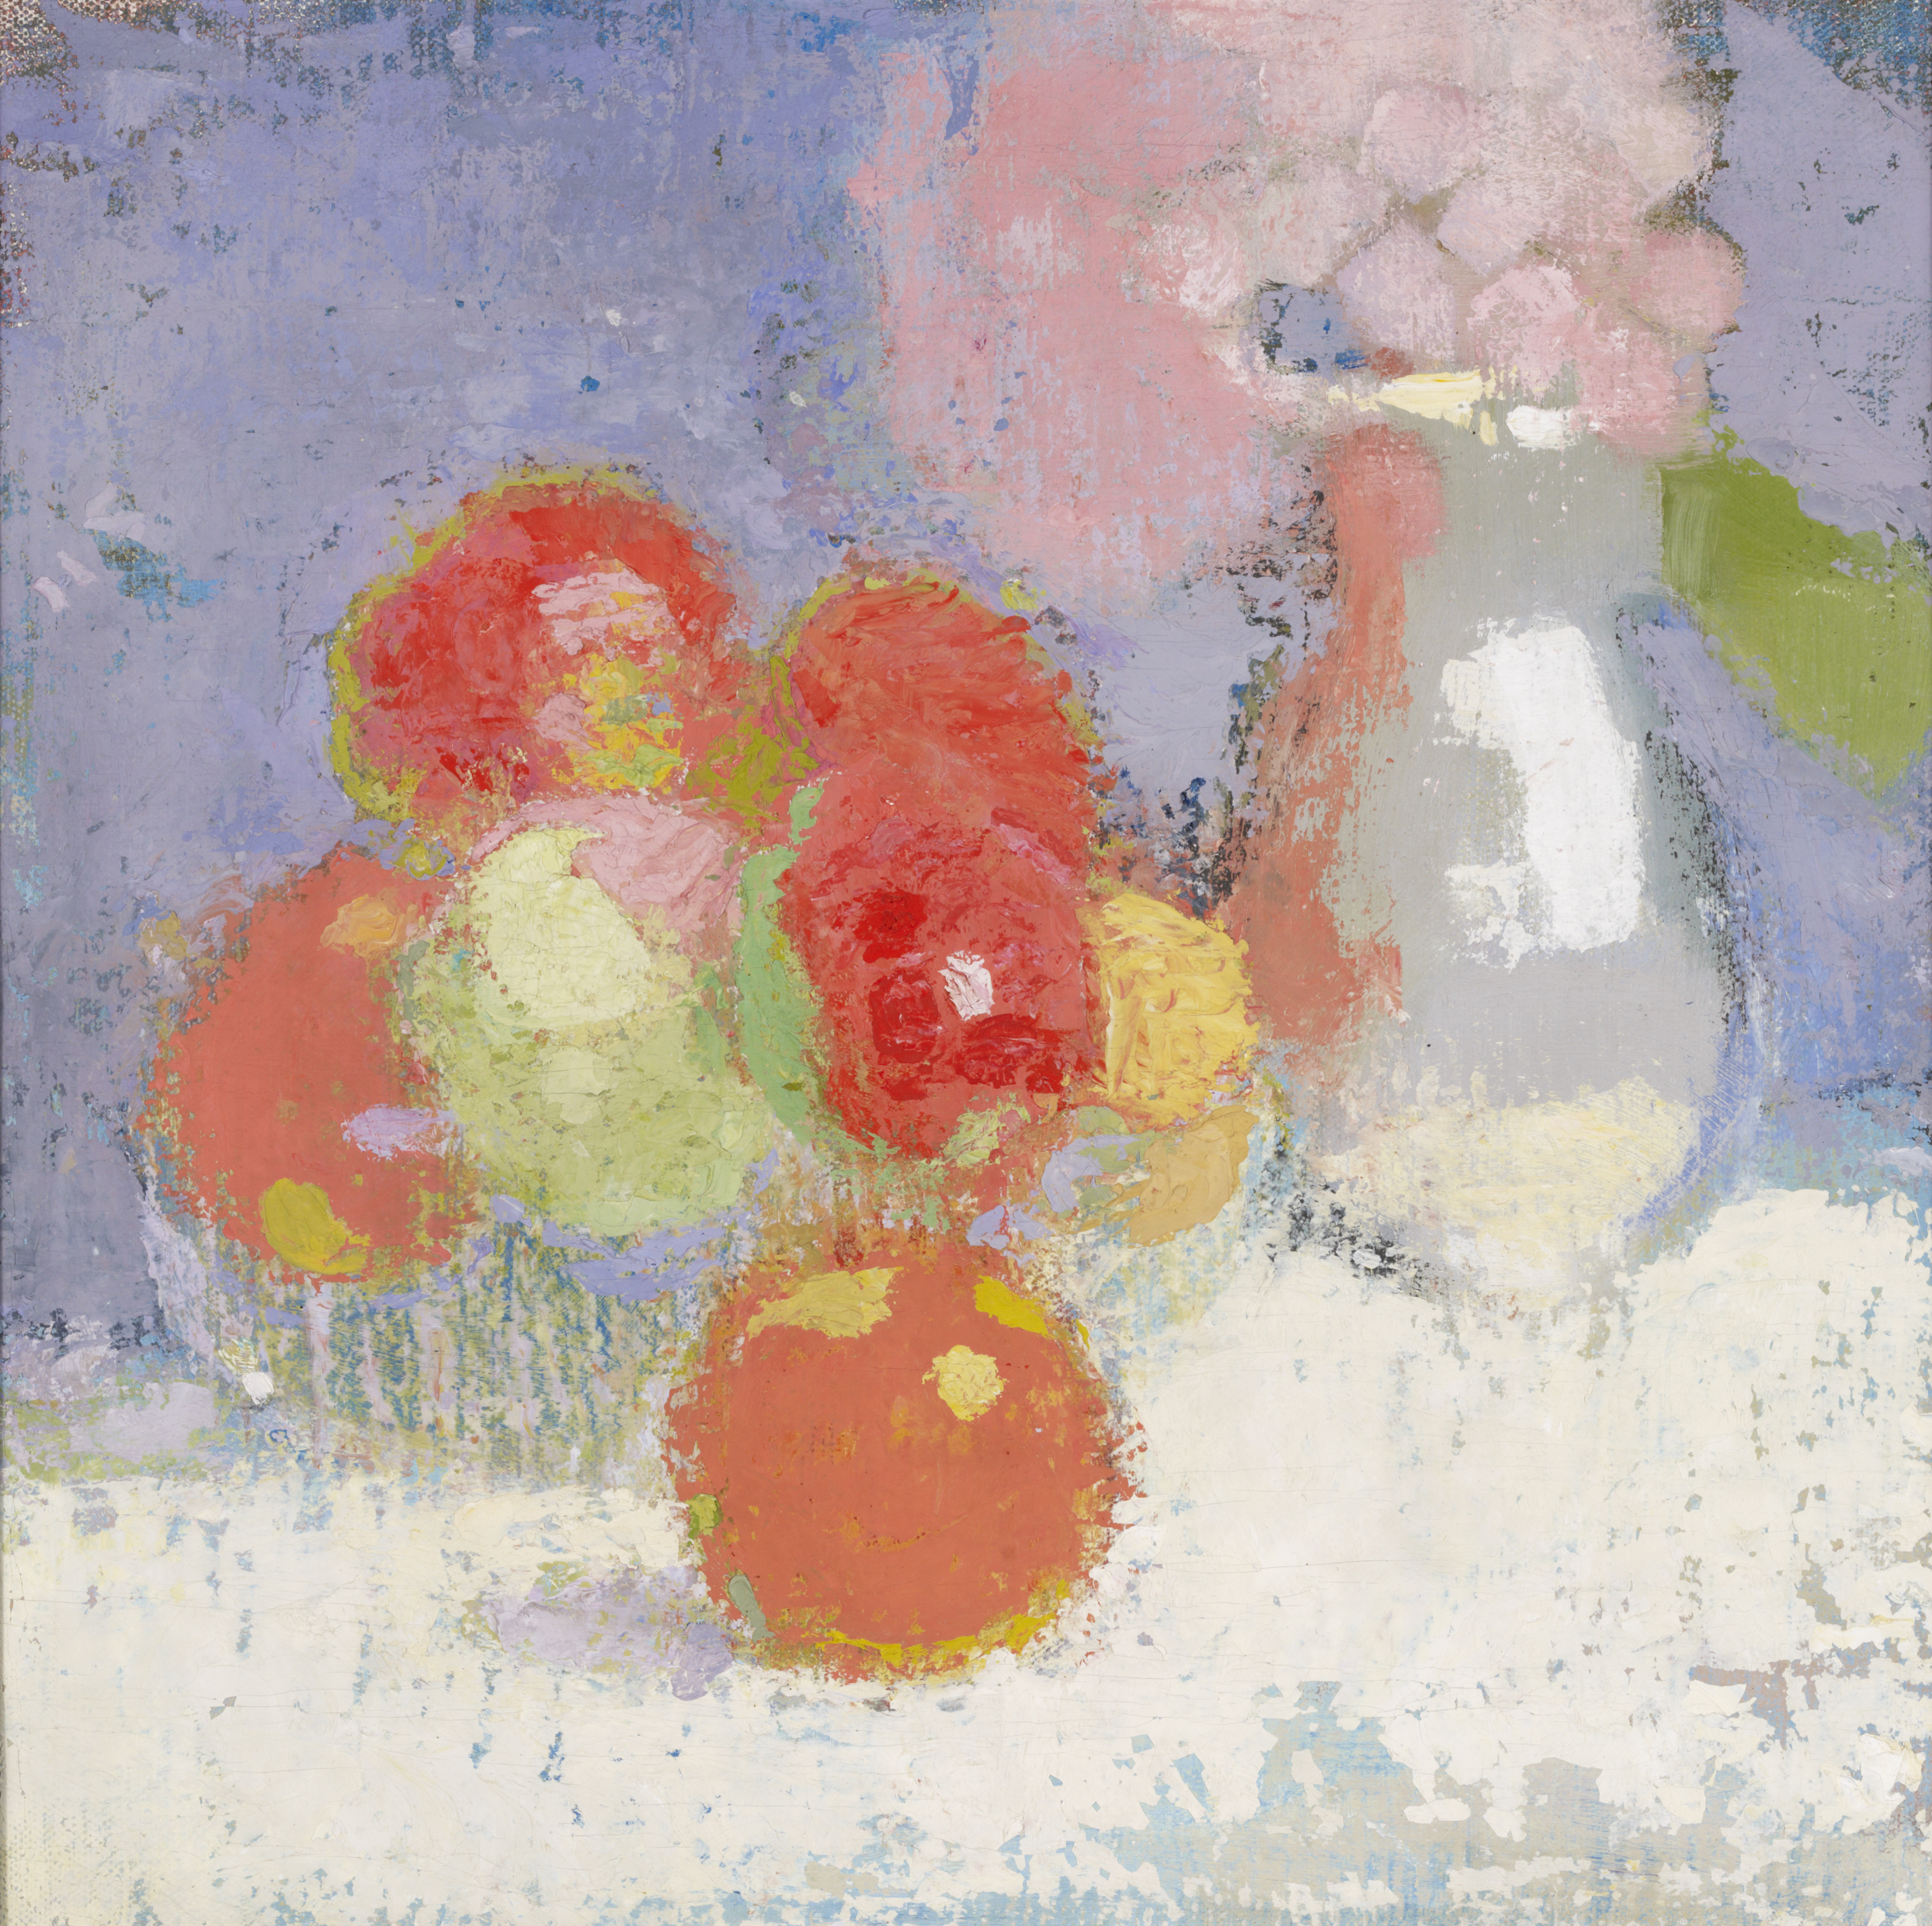 Červená Jablka by Helene Schjerfbeck - 1915 - 40.5 x 40.5 cm 